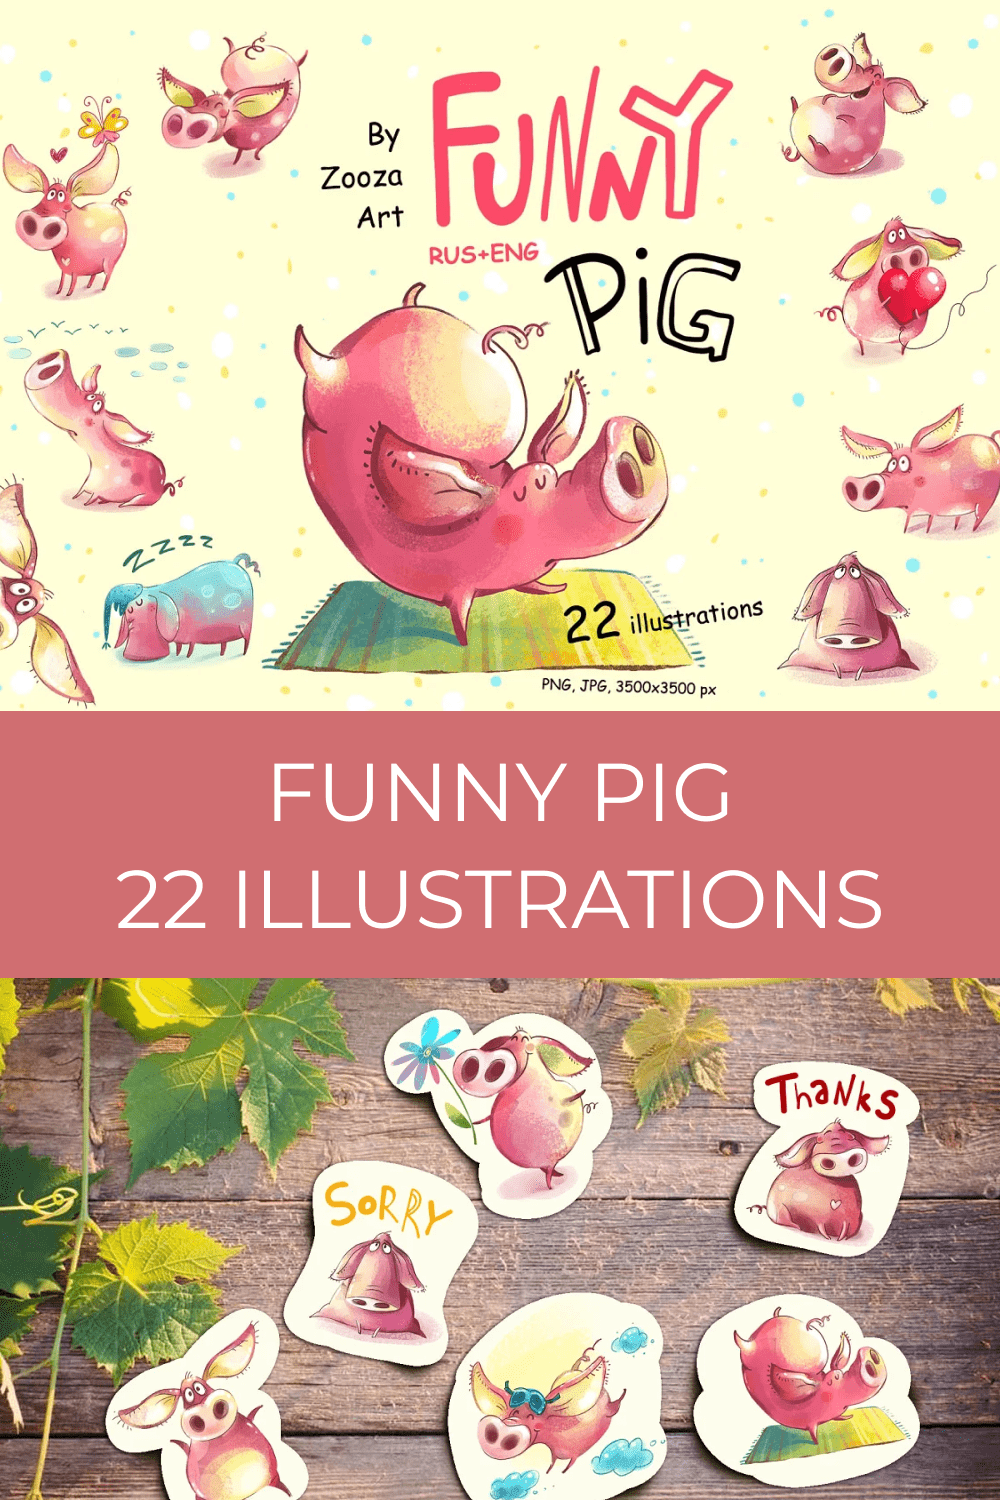 Funny Pig - 22 illustrations.